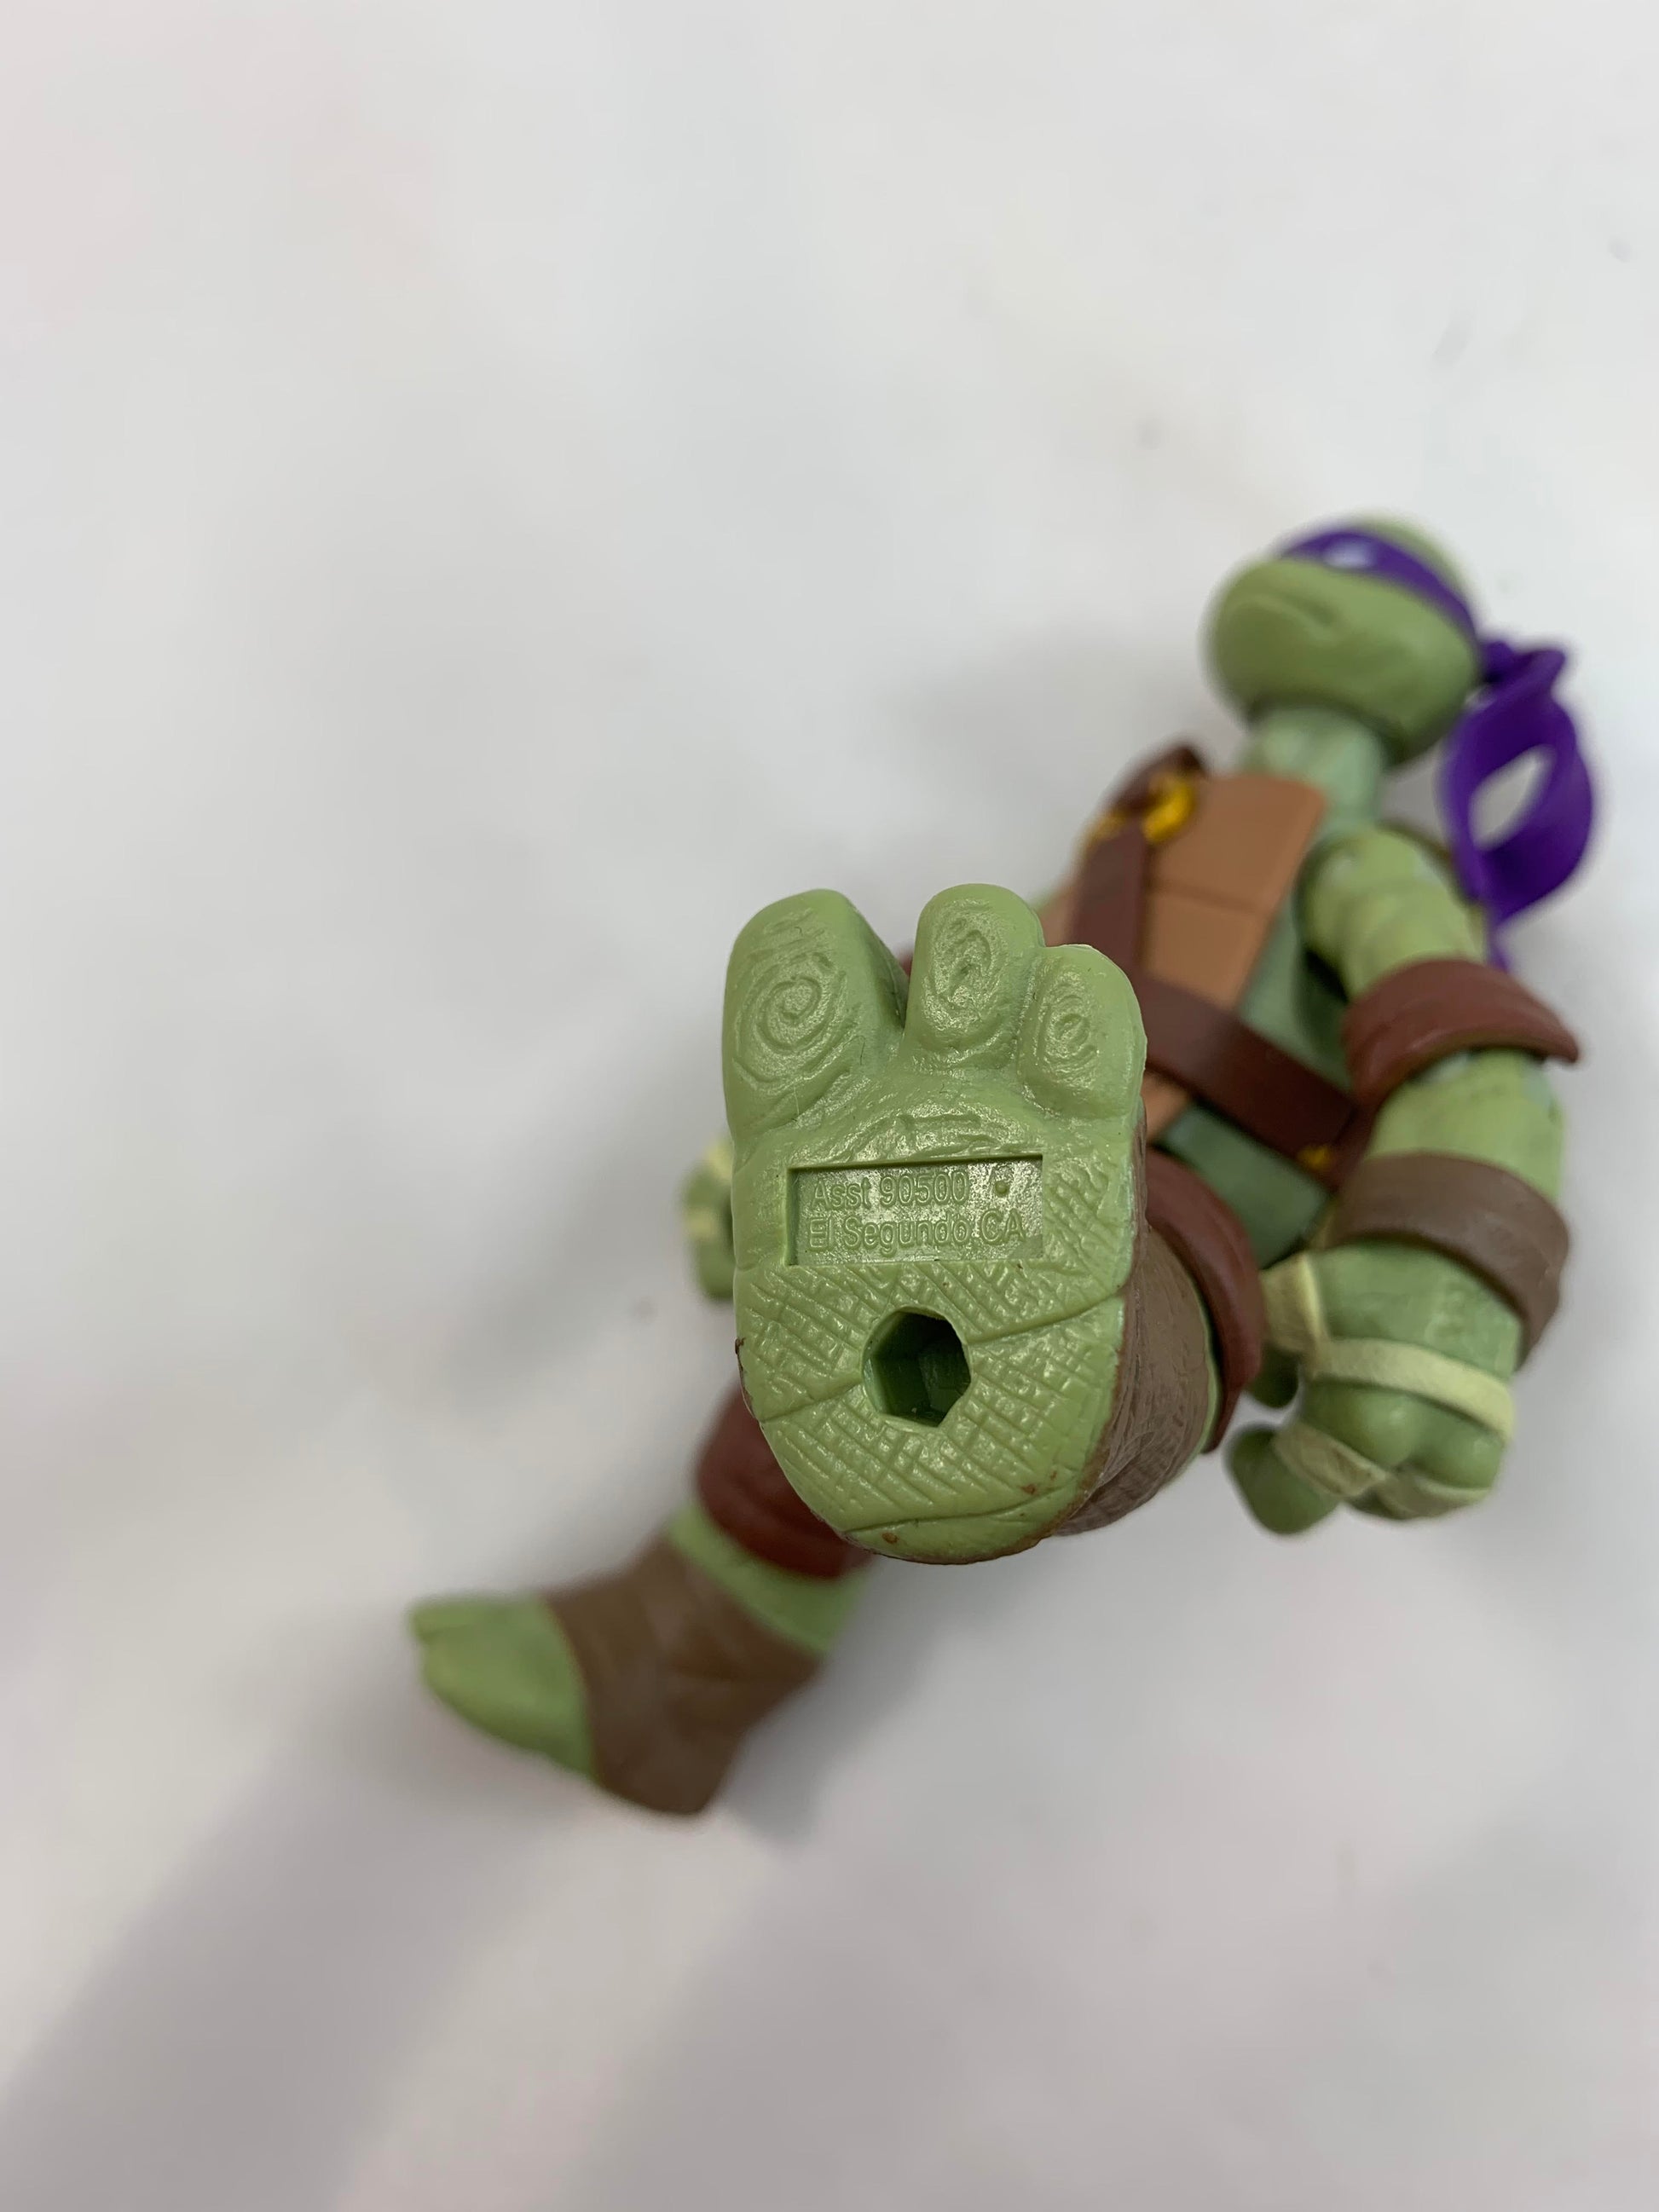 Playmates Viacom Teenage Mutant Ninja Turtles TMNT Donatello 2012 - Loose